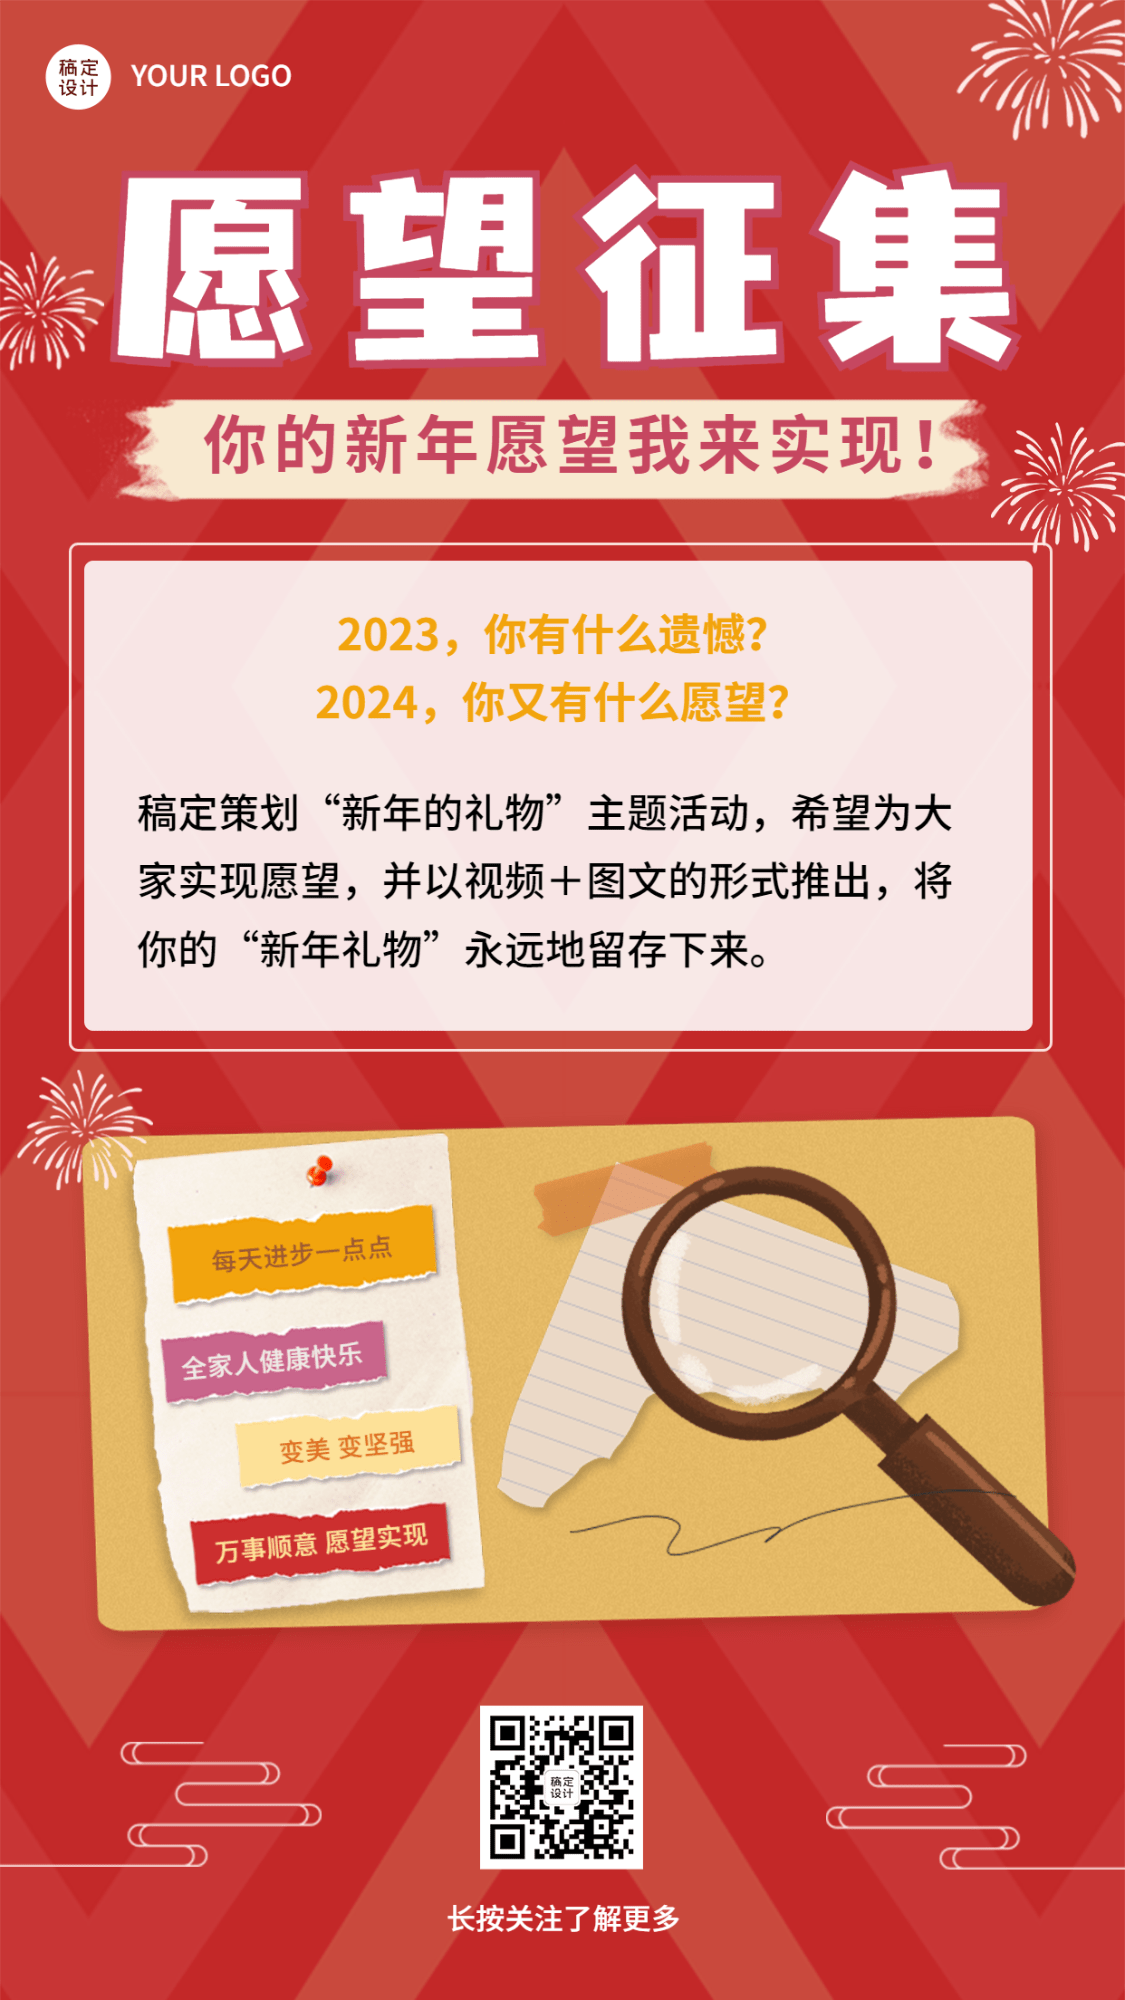 2024年新年愿望元旦节祝福手机海报预览效果